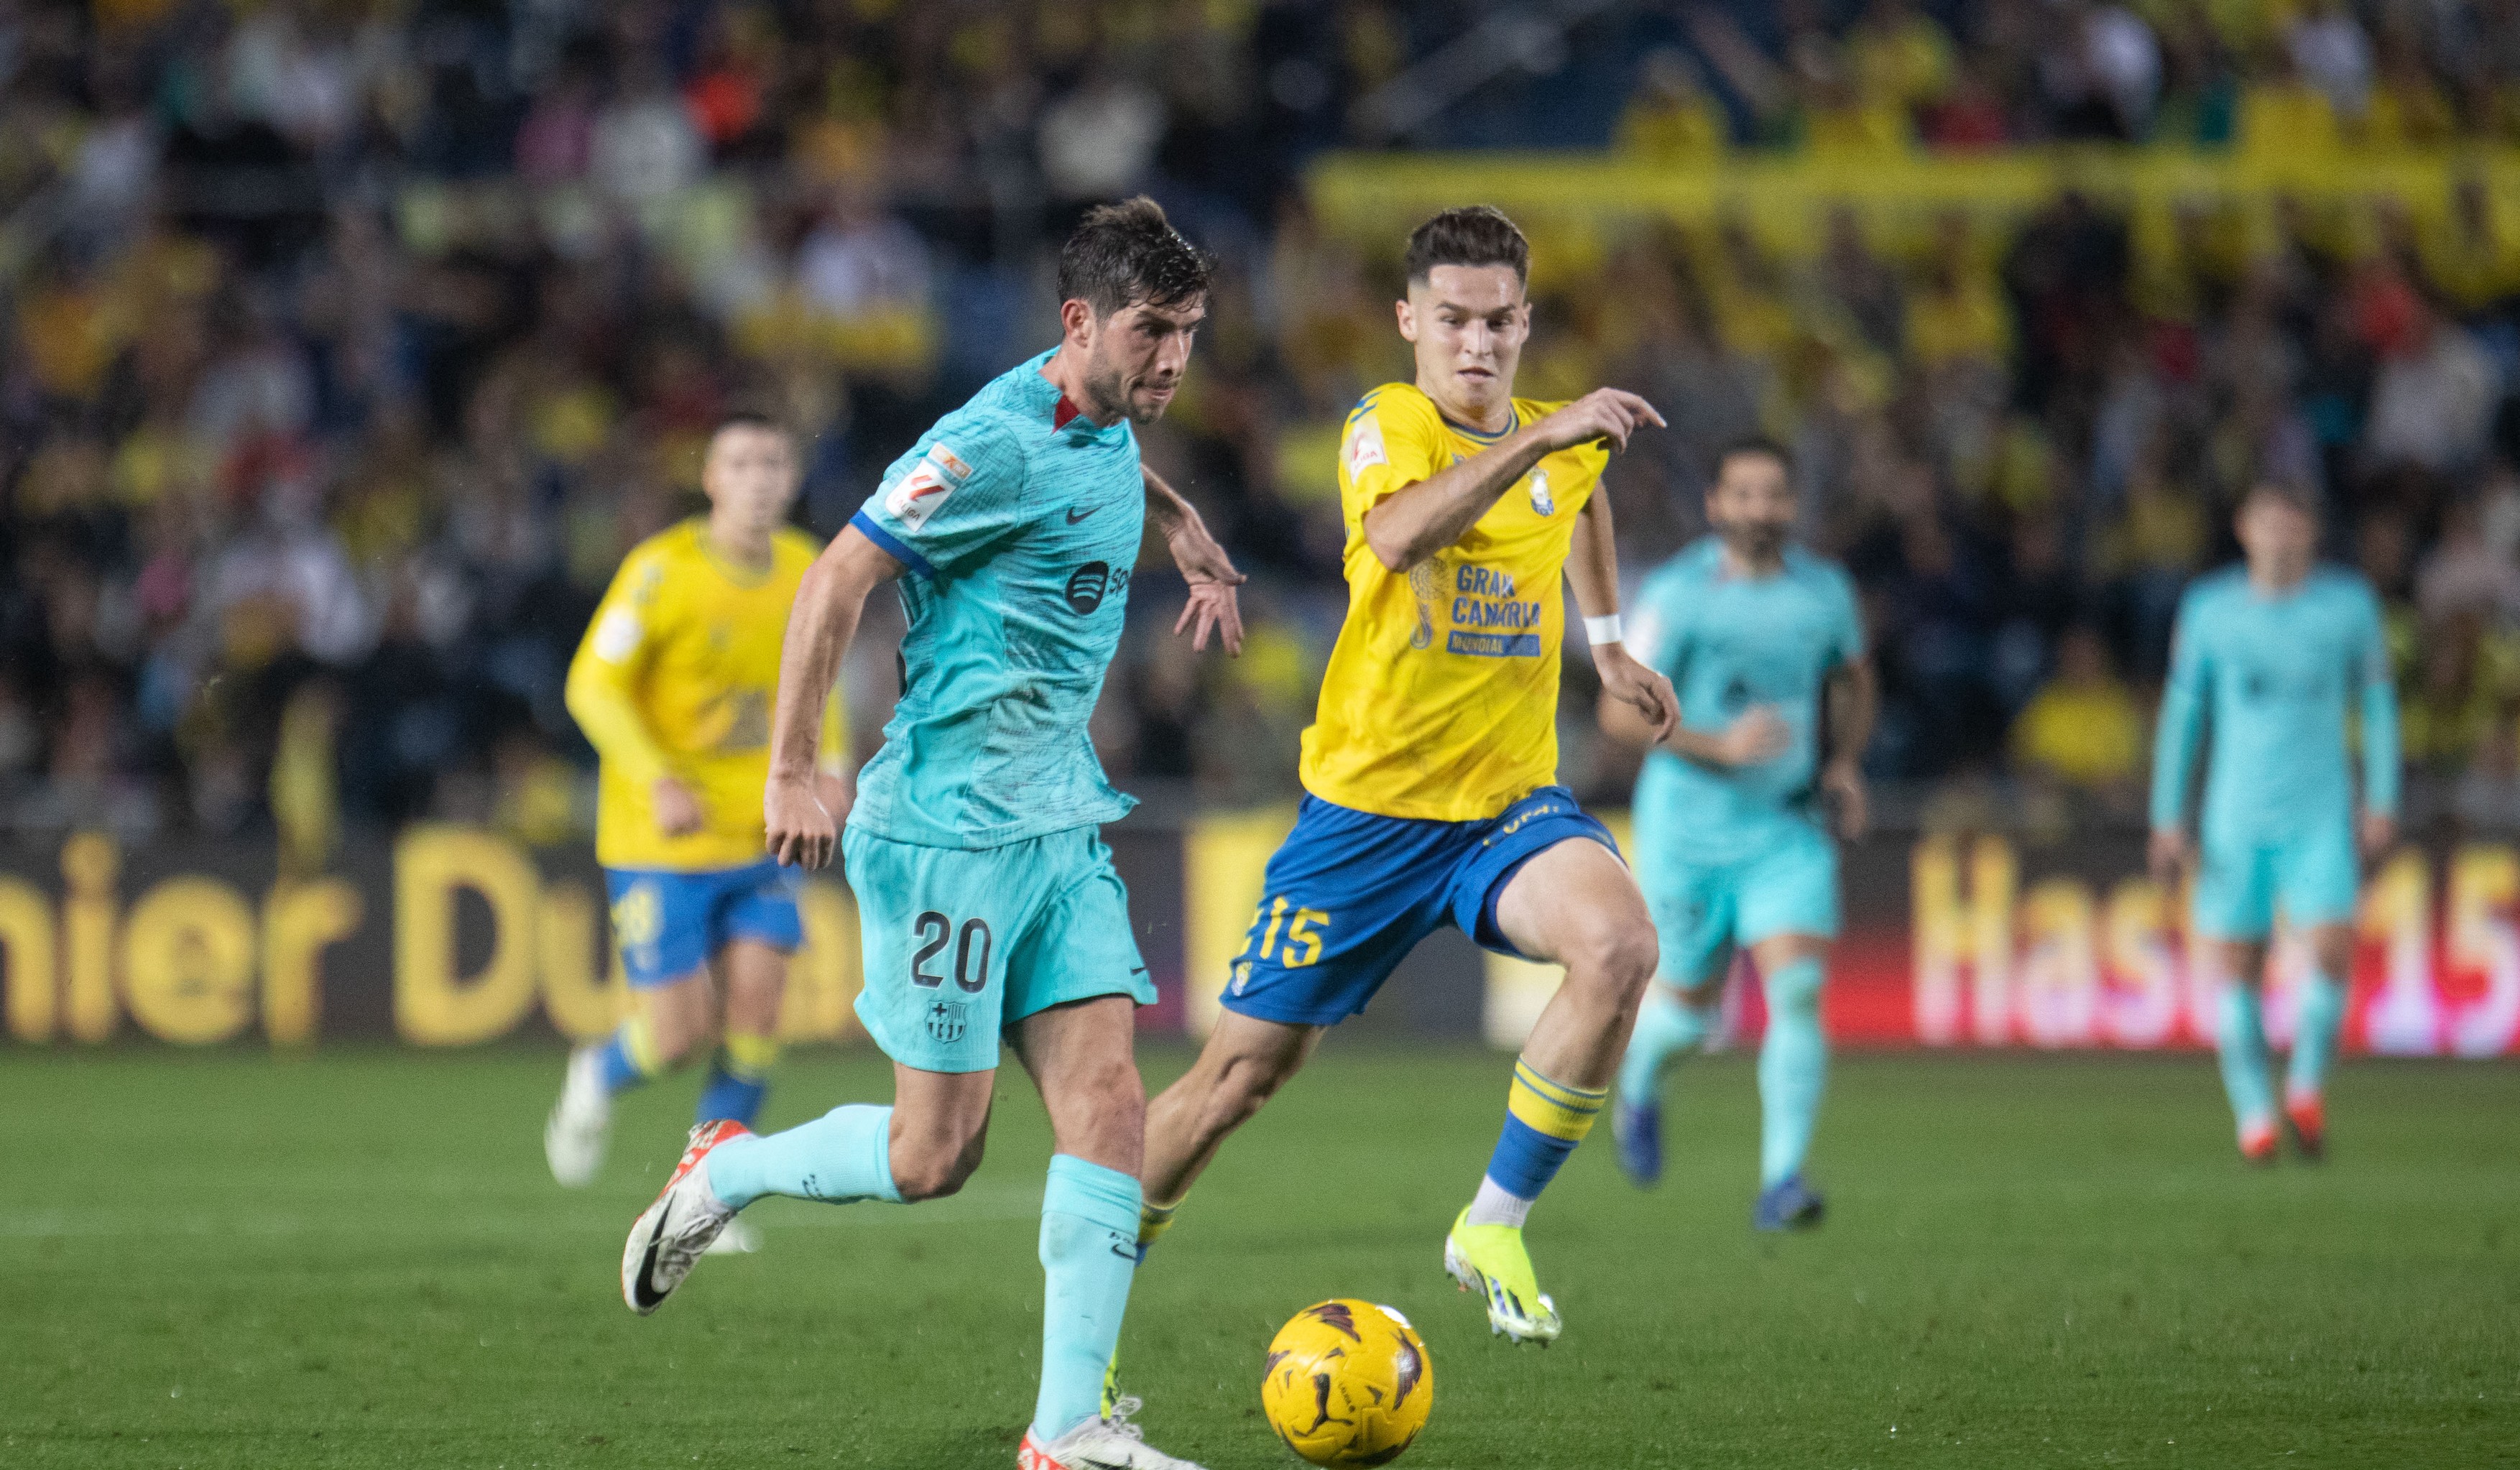 Barcelona - Las Palmas 0-0, ACUM, în direct la Digi Sport 3. Oaspeții evoluează în 10 oameni